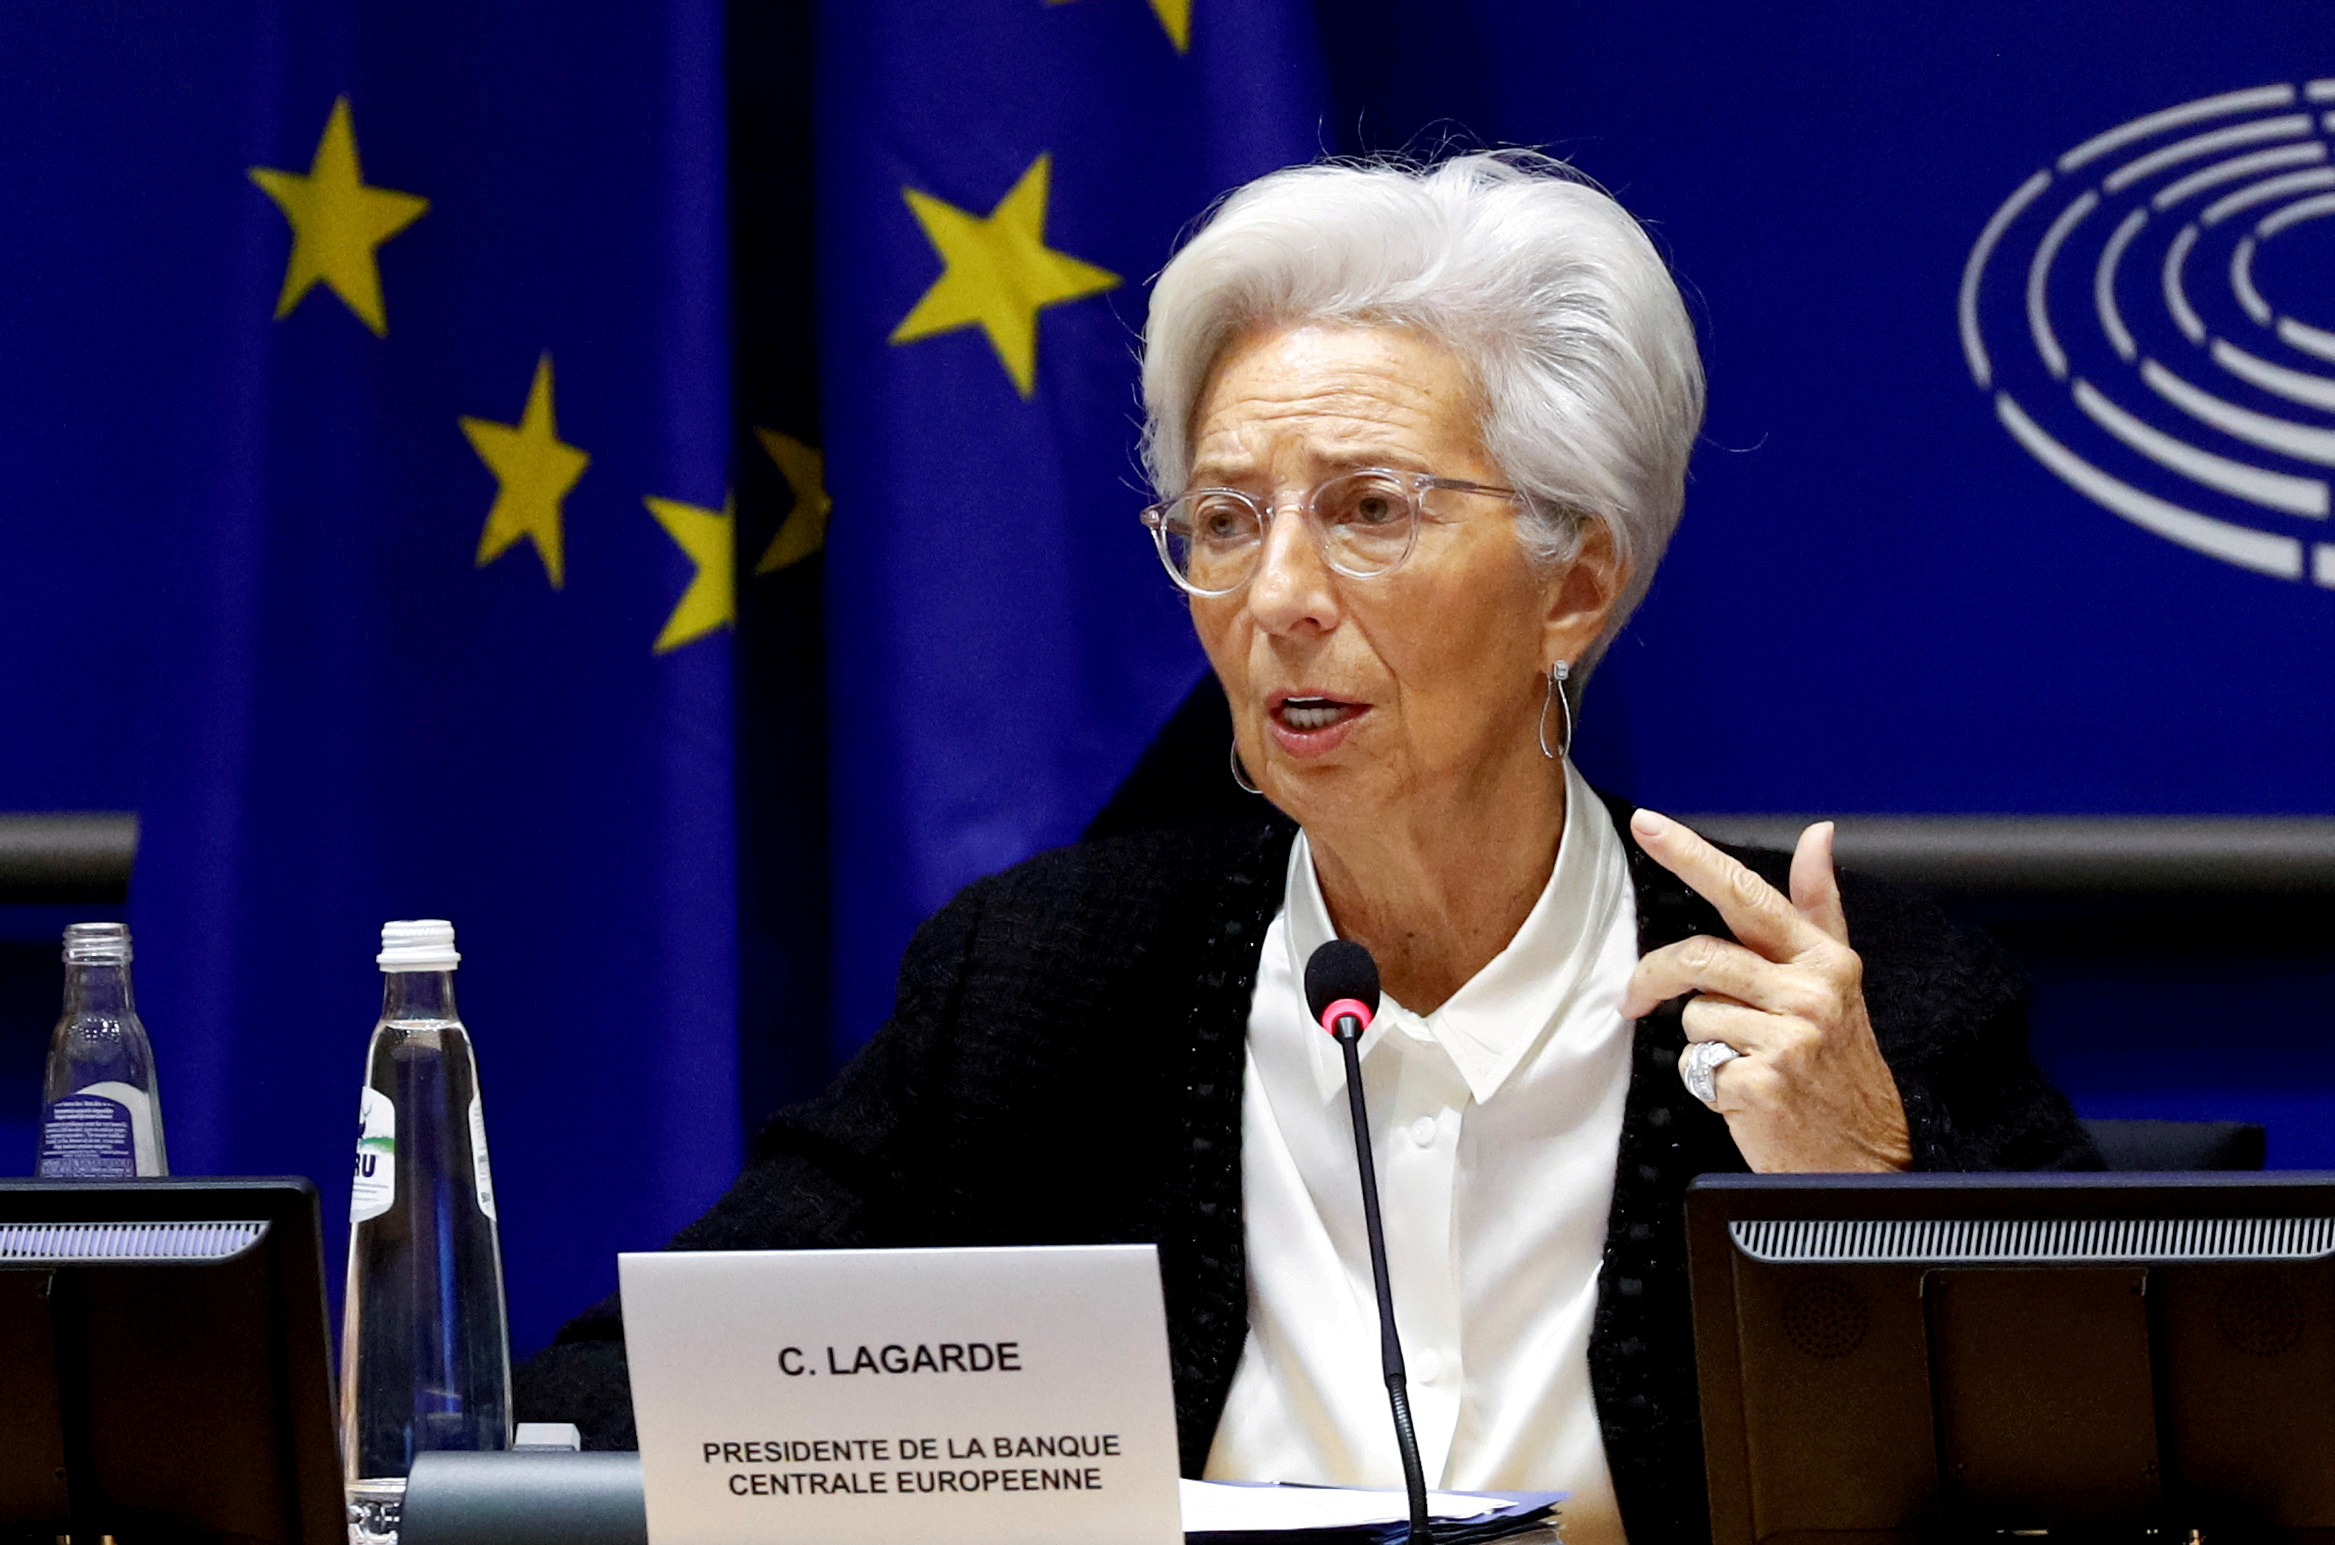 European Central Bank President Christine Lagarde in Brussels, Belgium February 6, 2020. REUTERS/Francois Lenoir